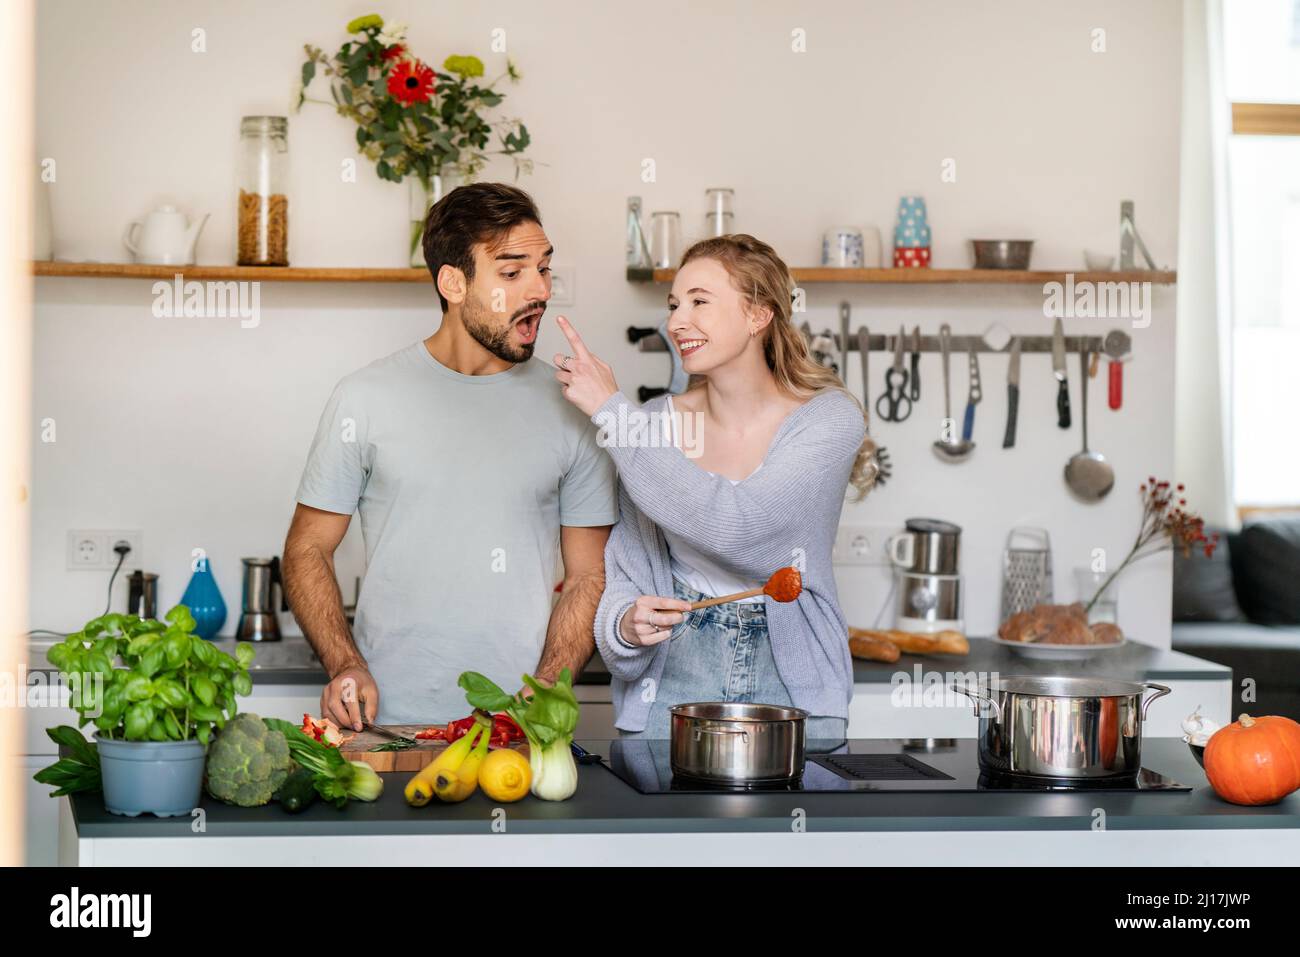 Lächelnde junge Frau, die ihrem Freund zu Hause in der Küche Nahrung zuführt Stockfoto